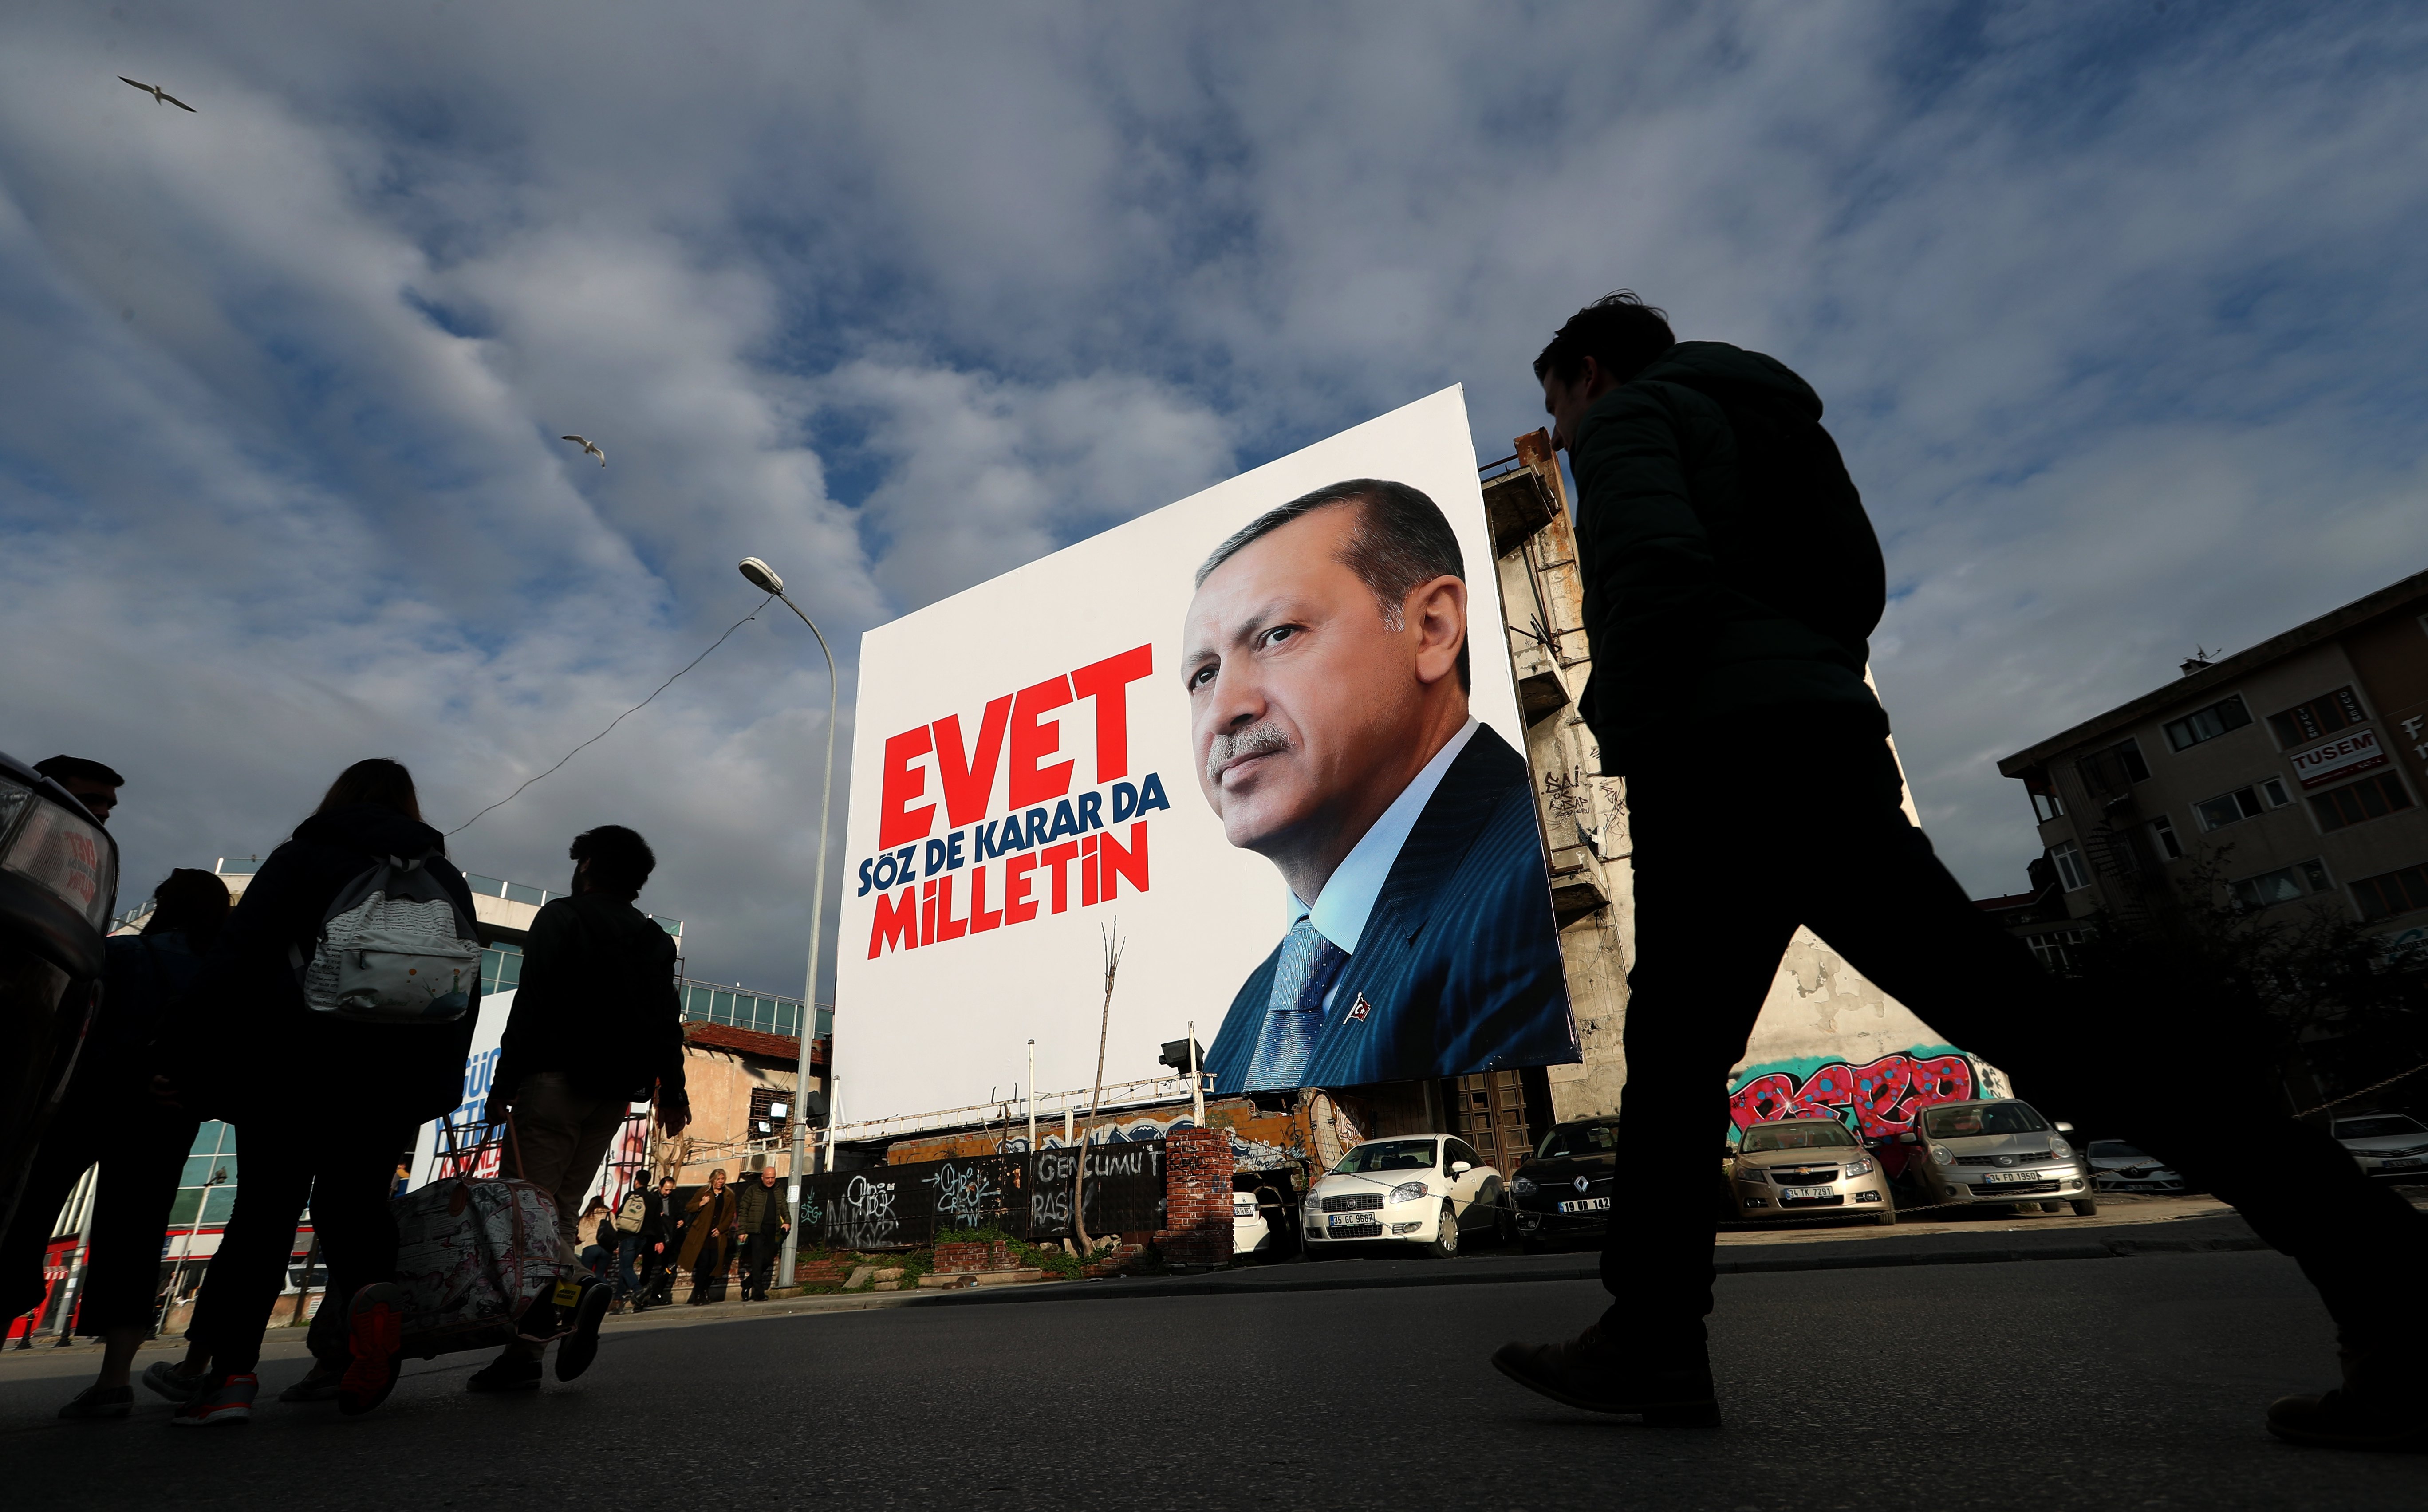 Ερντογάν: Η απάντηση στην Ευρώπη πρέπει να είναι «ναι» στο δημοψήφισμα